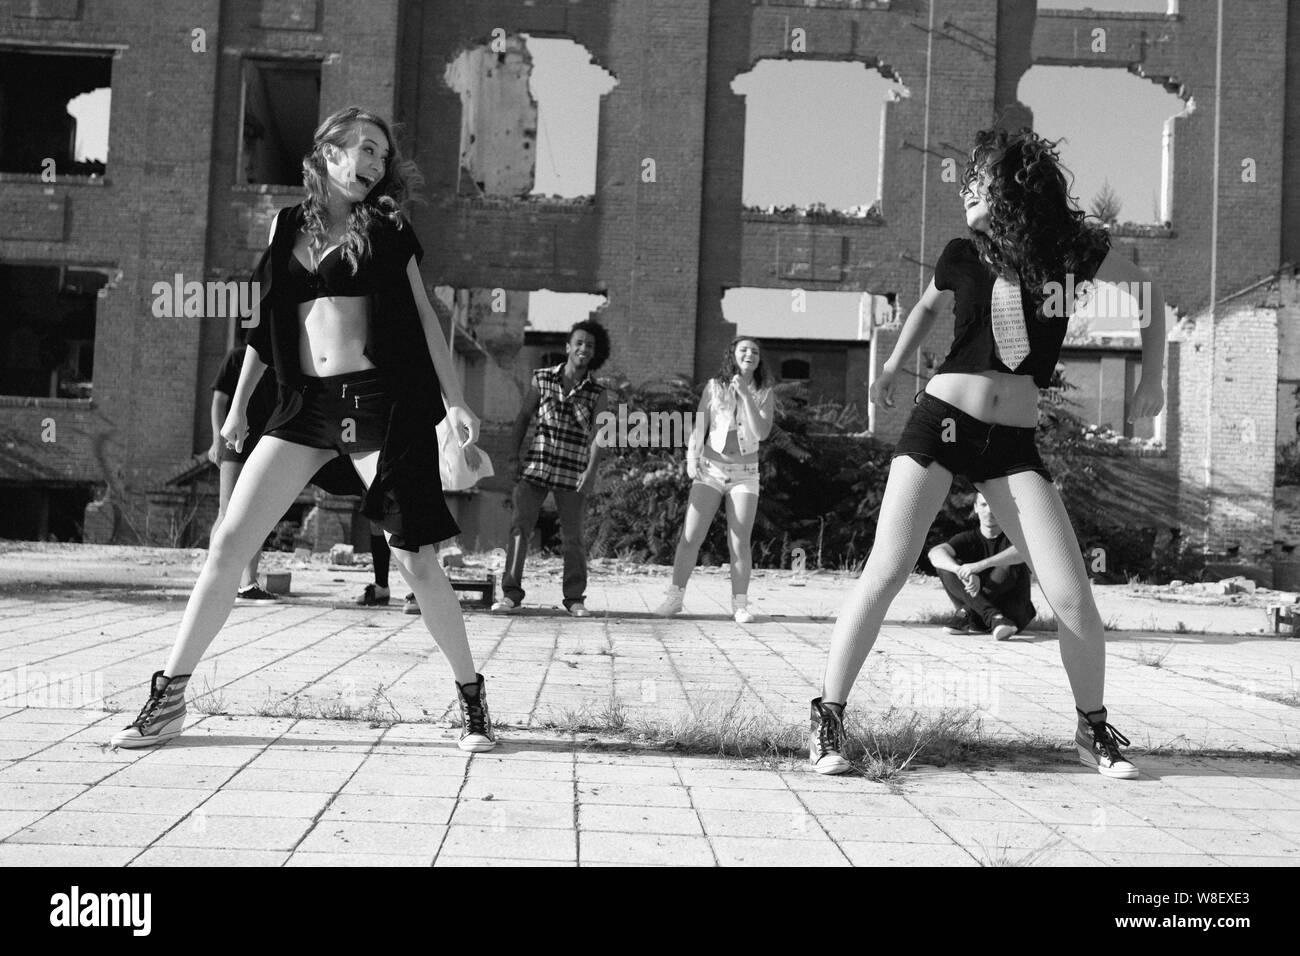 Zwei junge Mädchen Straße tanzen in einem städtischen Platz Durchführen einer energetischen Routine der hip hop Moves beleuchtet durch eine helle Sonne, Low Angle View. Stockfoto